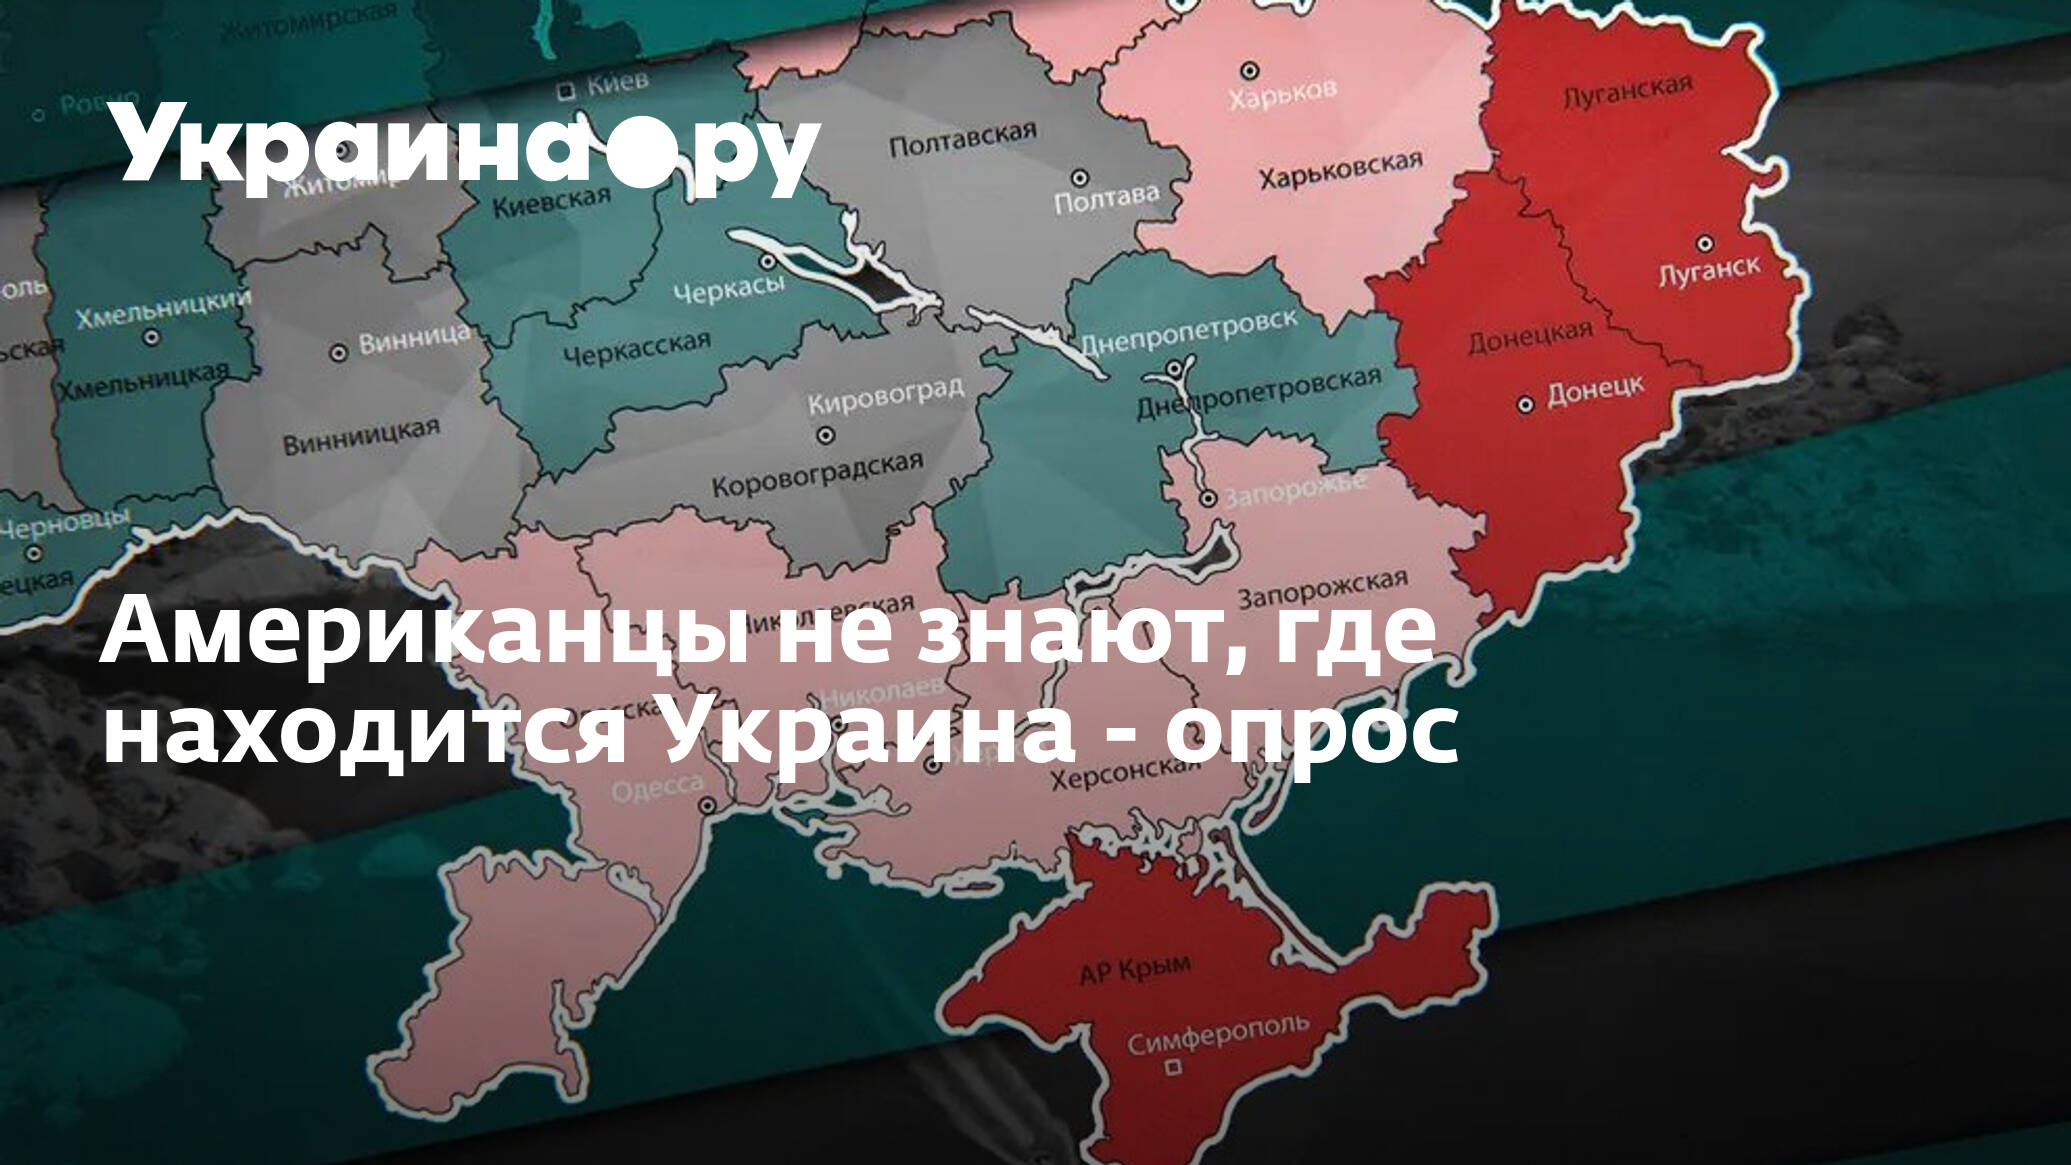 Запад передал украину. Распад Украины 2021 карта. Карта распада Украины 2020. Оккупация Венгрией Закарпатской Украины. Территория Украины 2020.